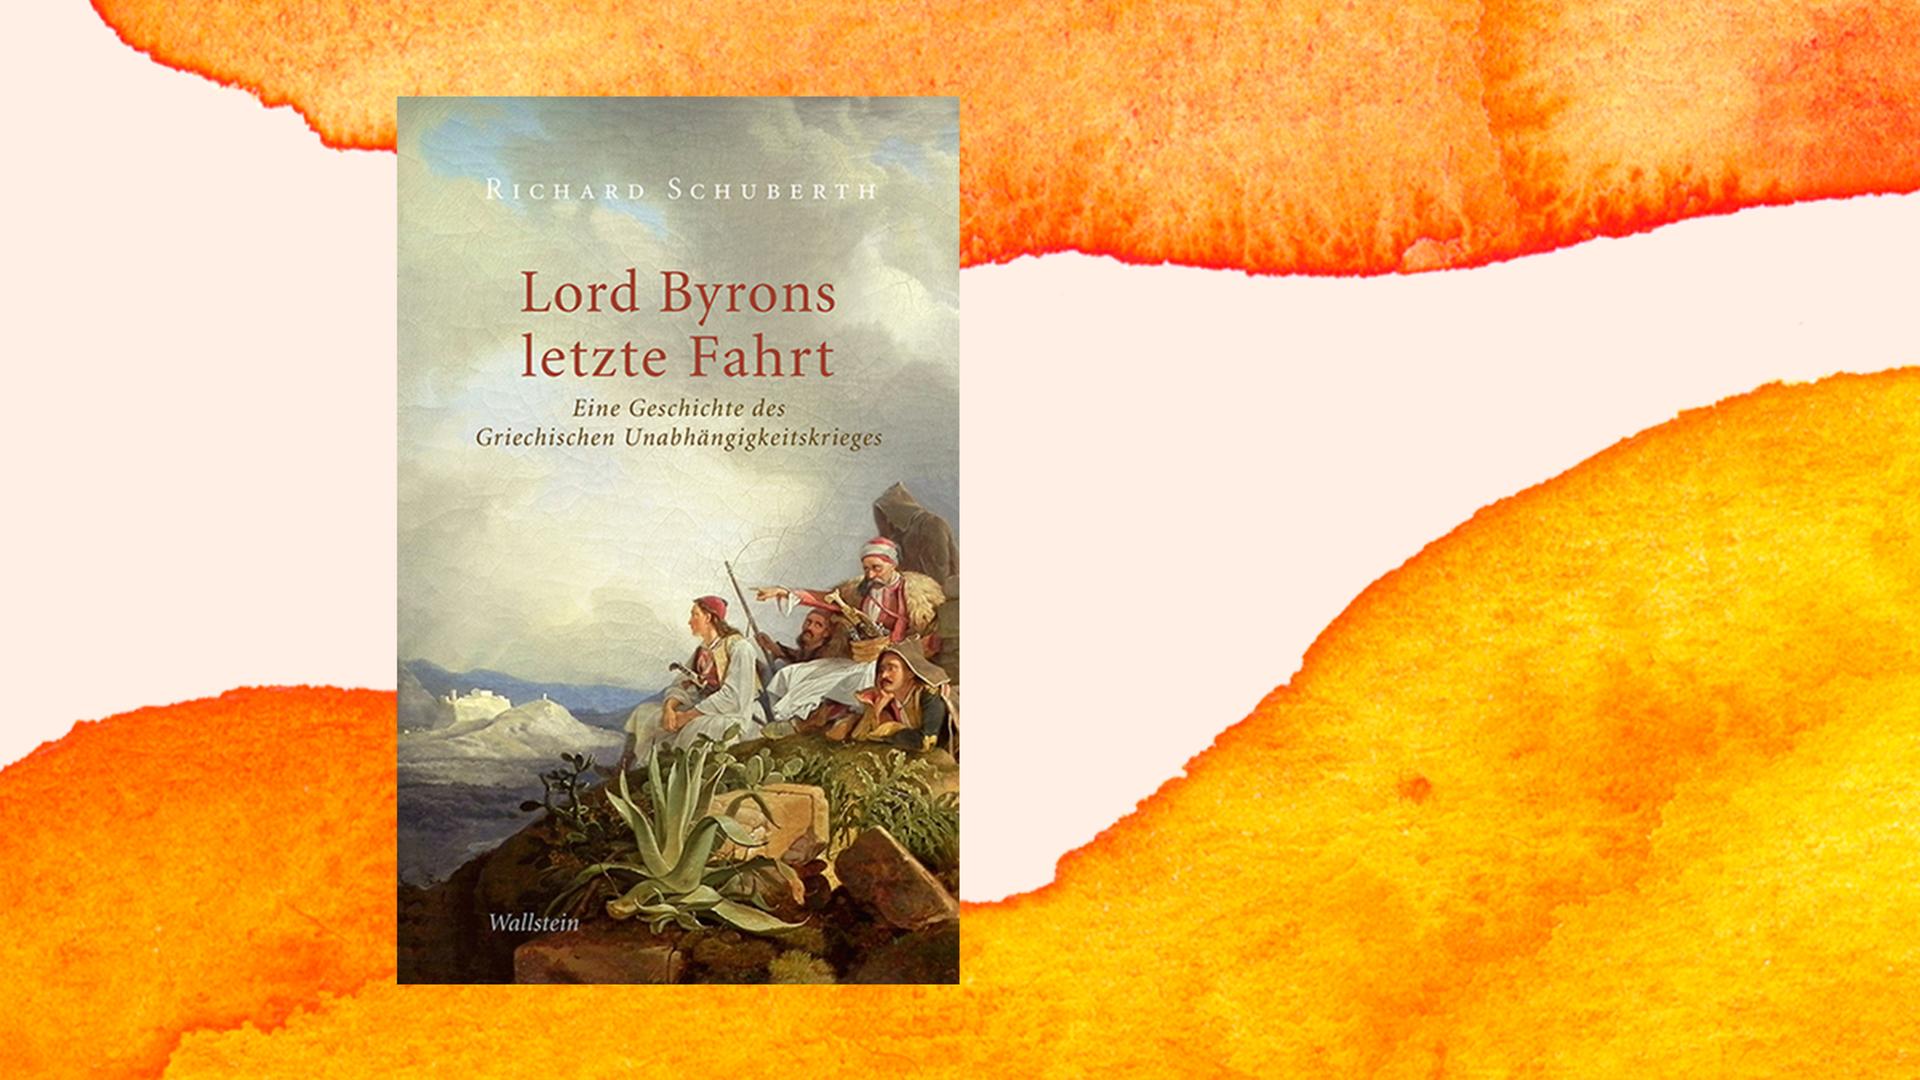 Buchcover von Richard Schuberth: "Lord Byrons letzte Fahrt. Eine Geschichte des Griechischen Unabhängigkeitskrieges." Wallstein Verlag, 2021.